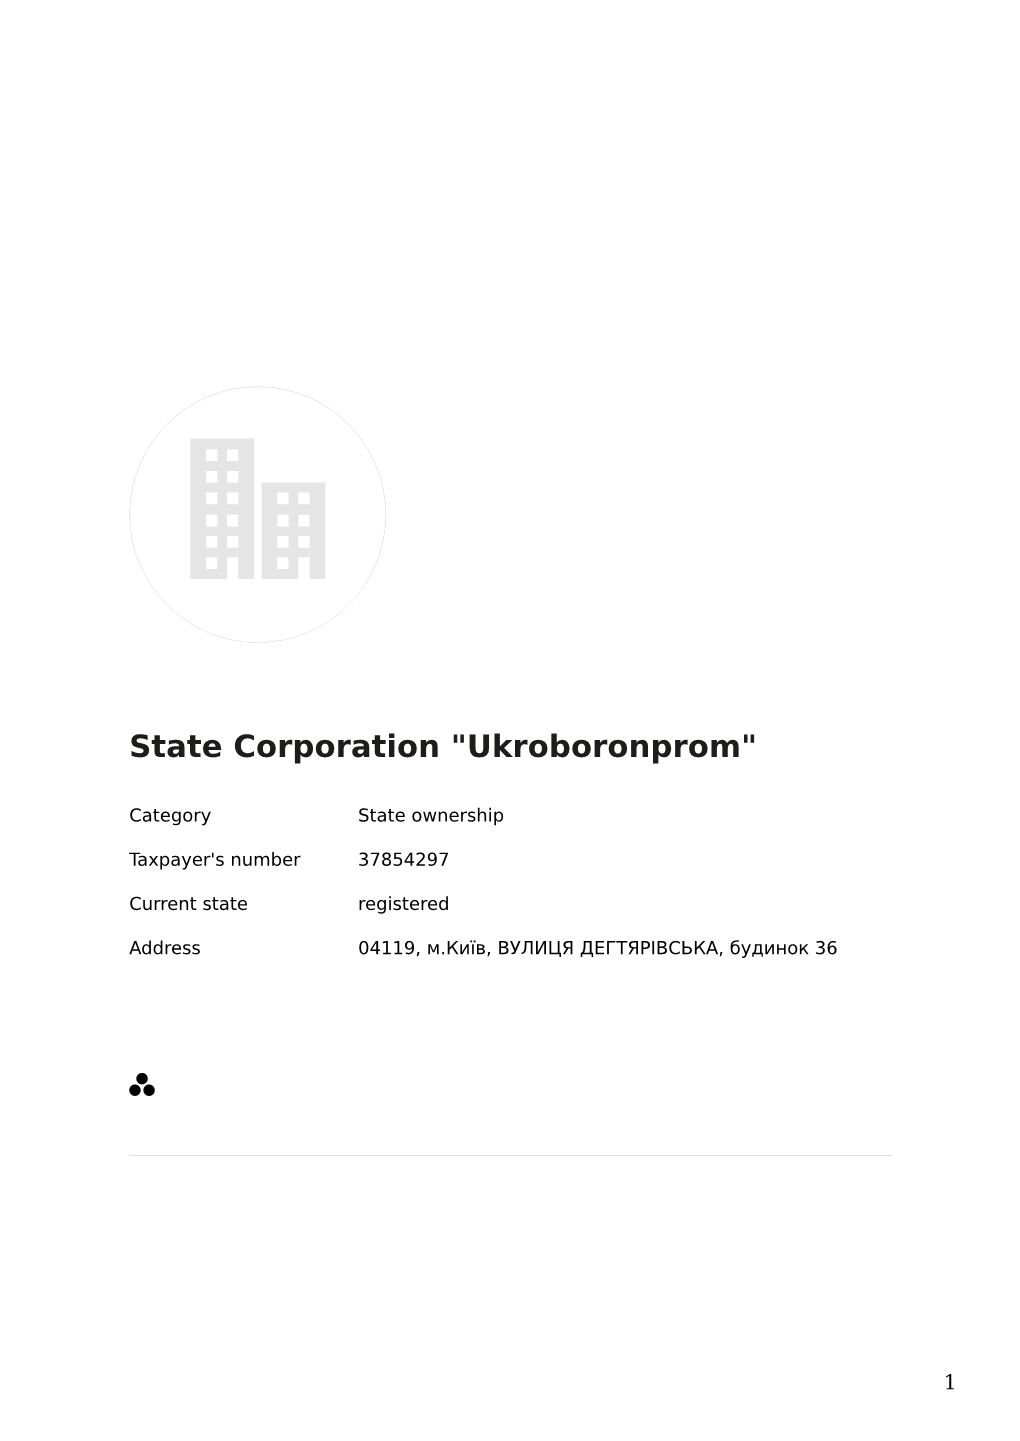 PEP: State Corporation "Ukroboronprom" (37854297)